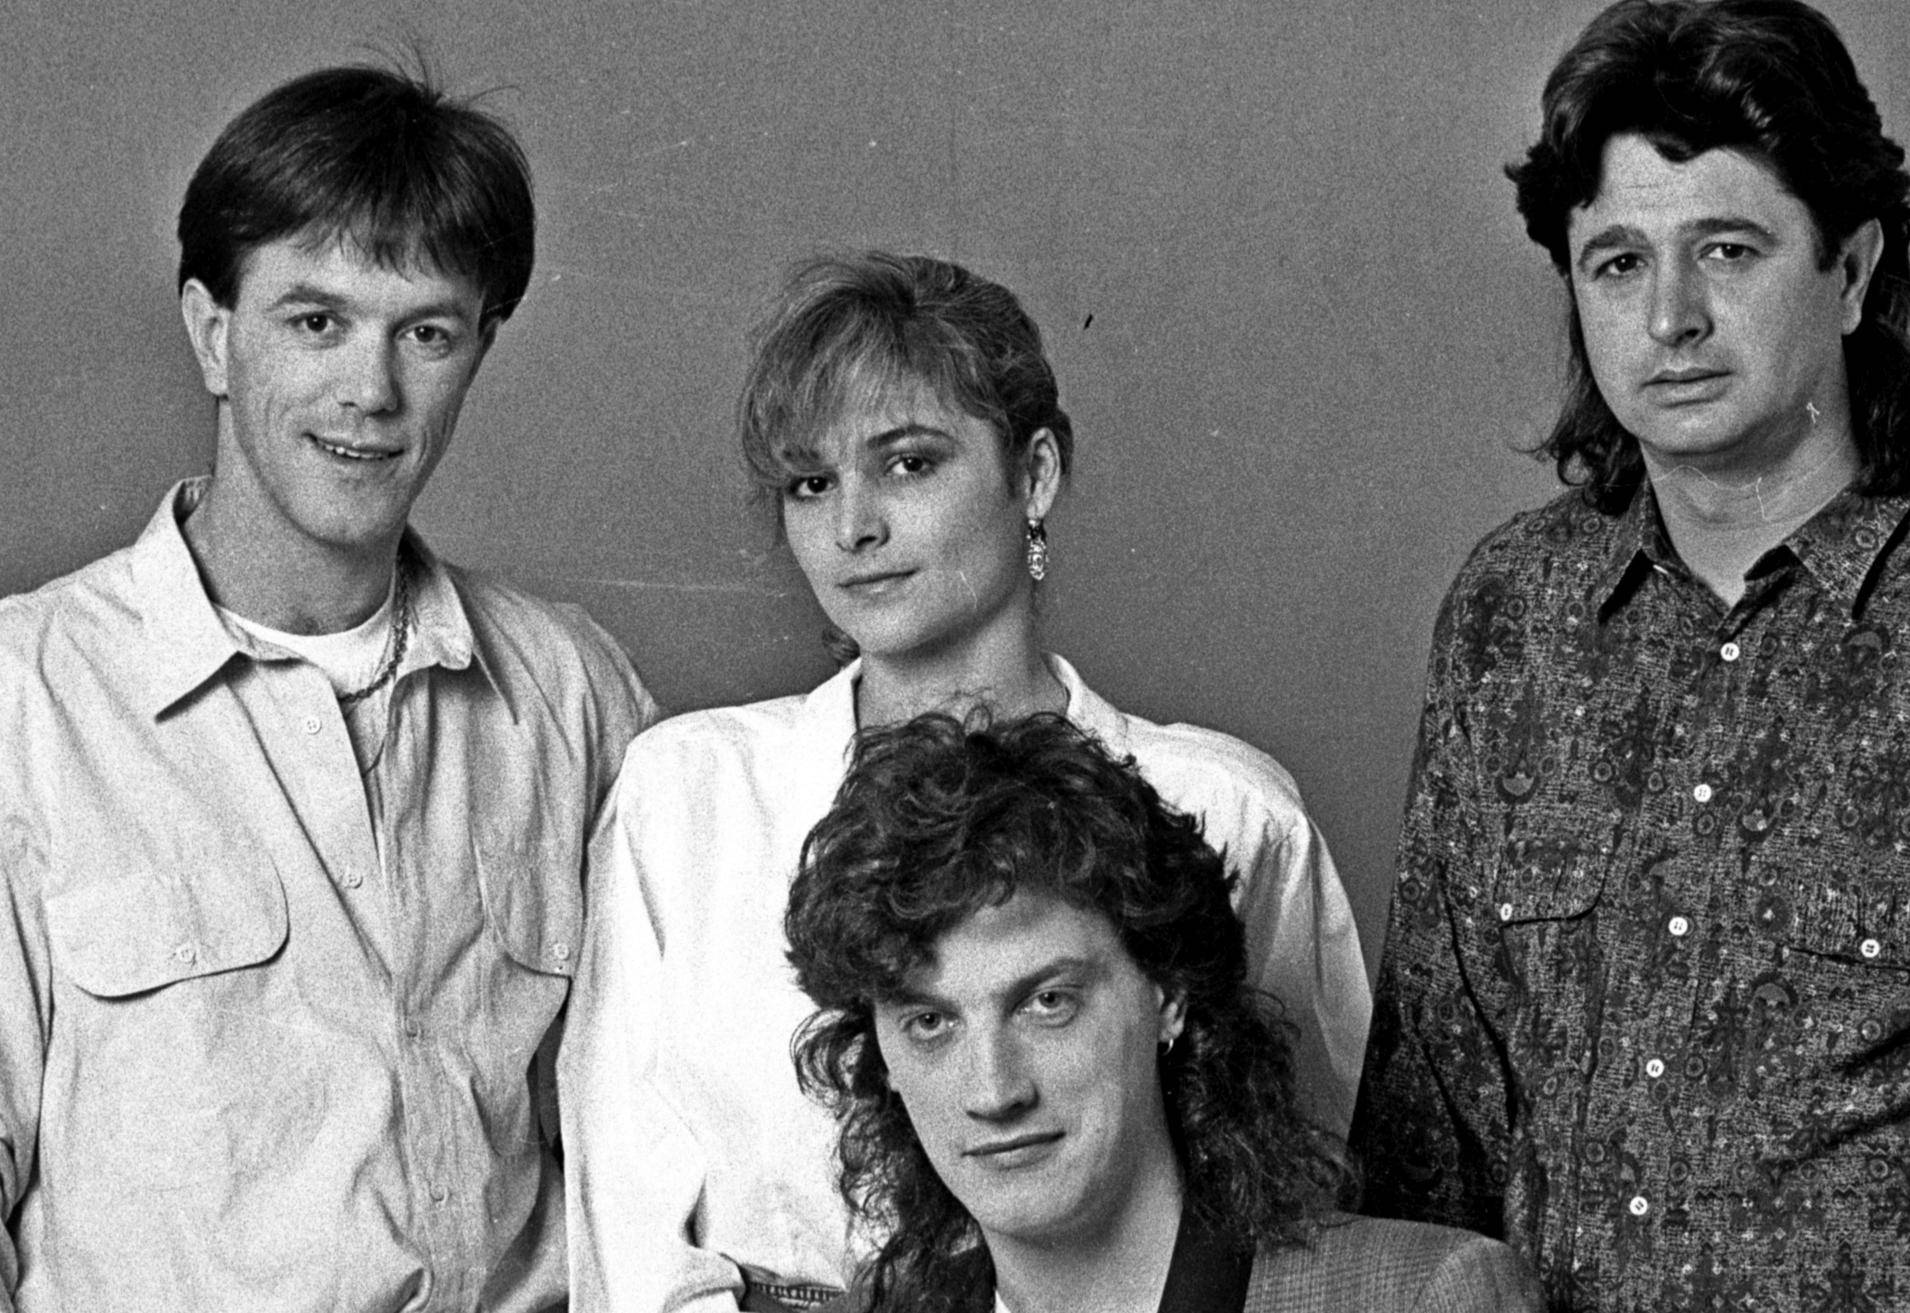 Grupa Magazin pjeva od 1979. godine, a nas zanima koja vam je njihova pjesma najbolja?